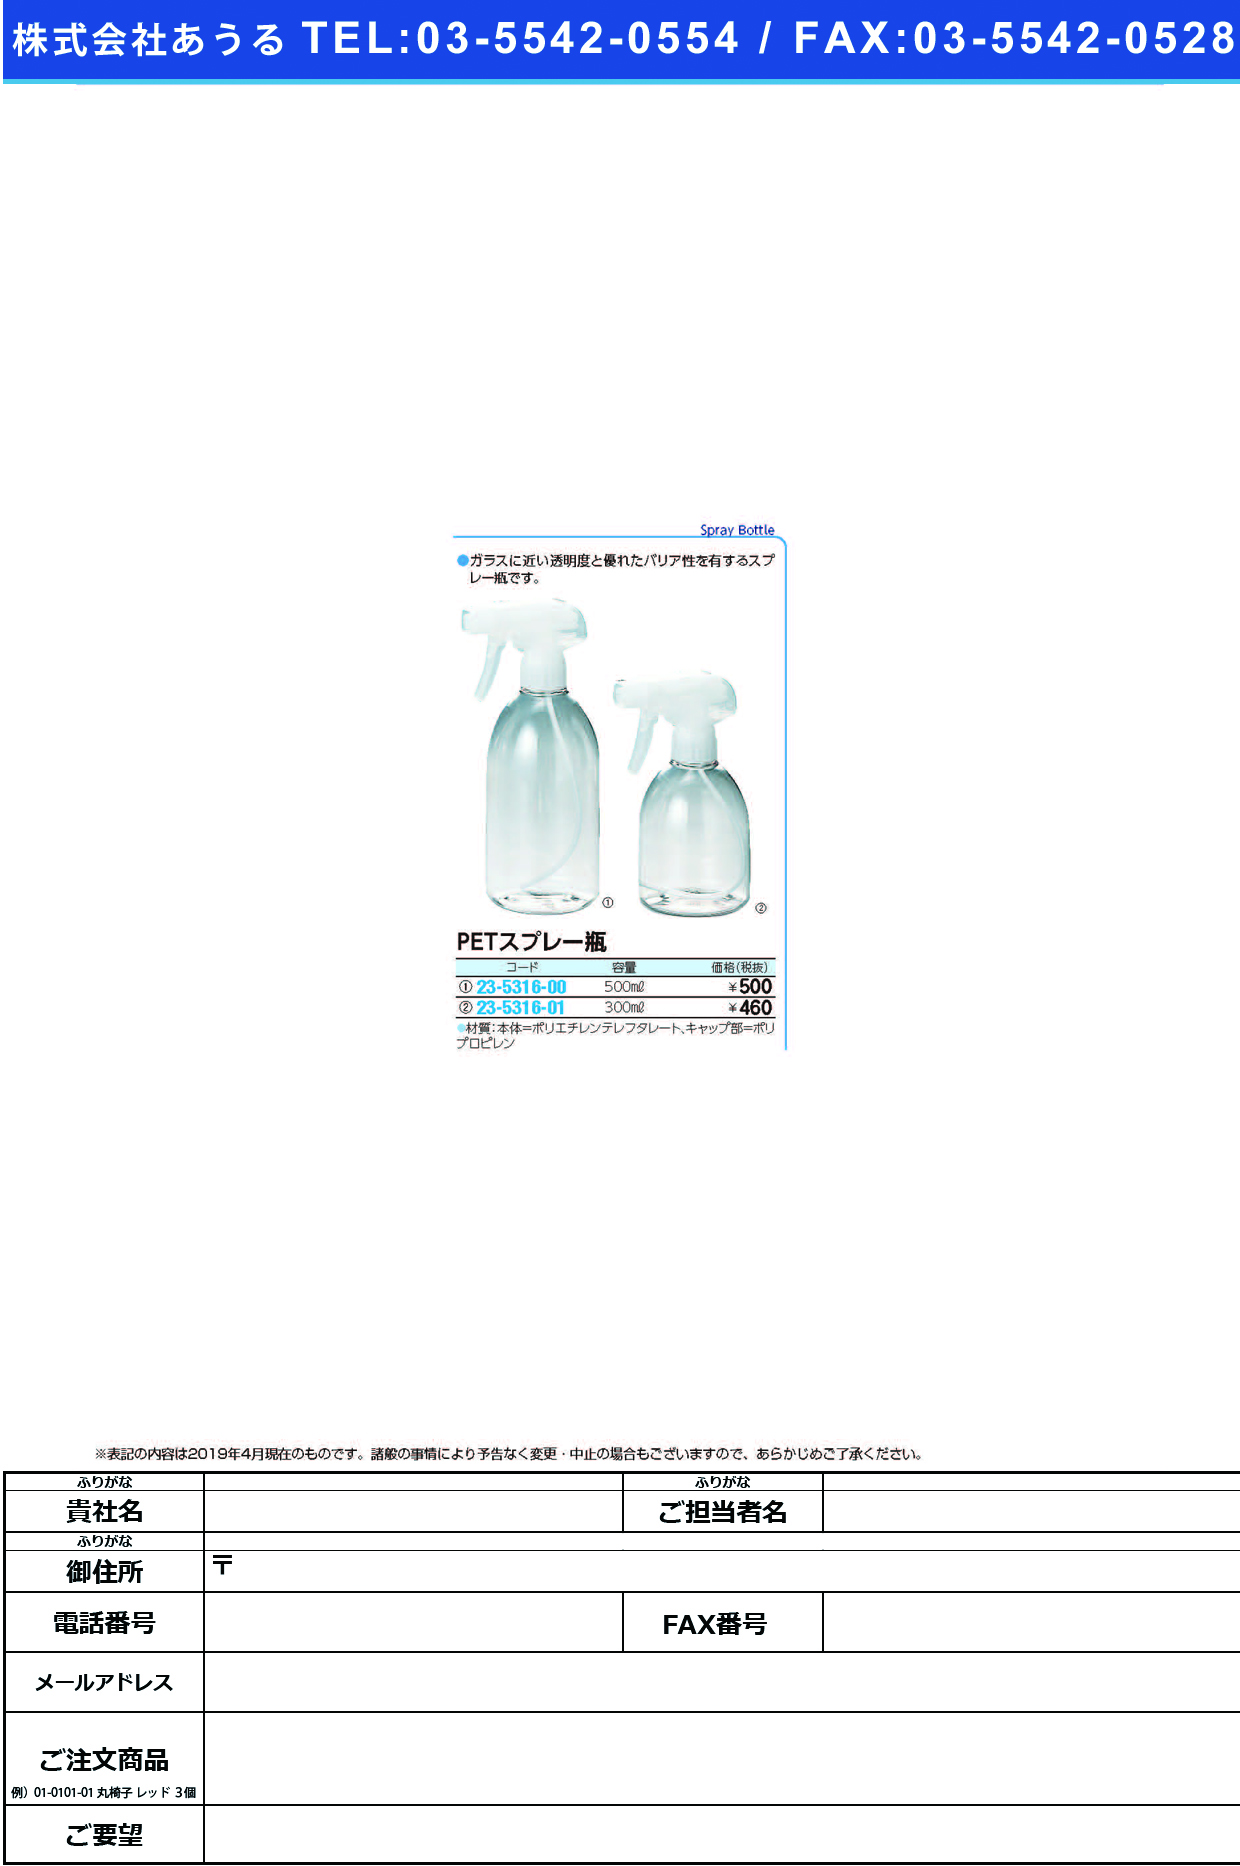 (23-5316-00)ＰＥＴスプレー瓶 10-121-01(500ML) PETｽﾌﾟﾚｰﾋﾞﾝ【1本単位】【2019年カタログ商品】